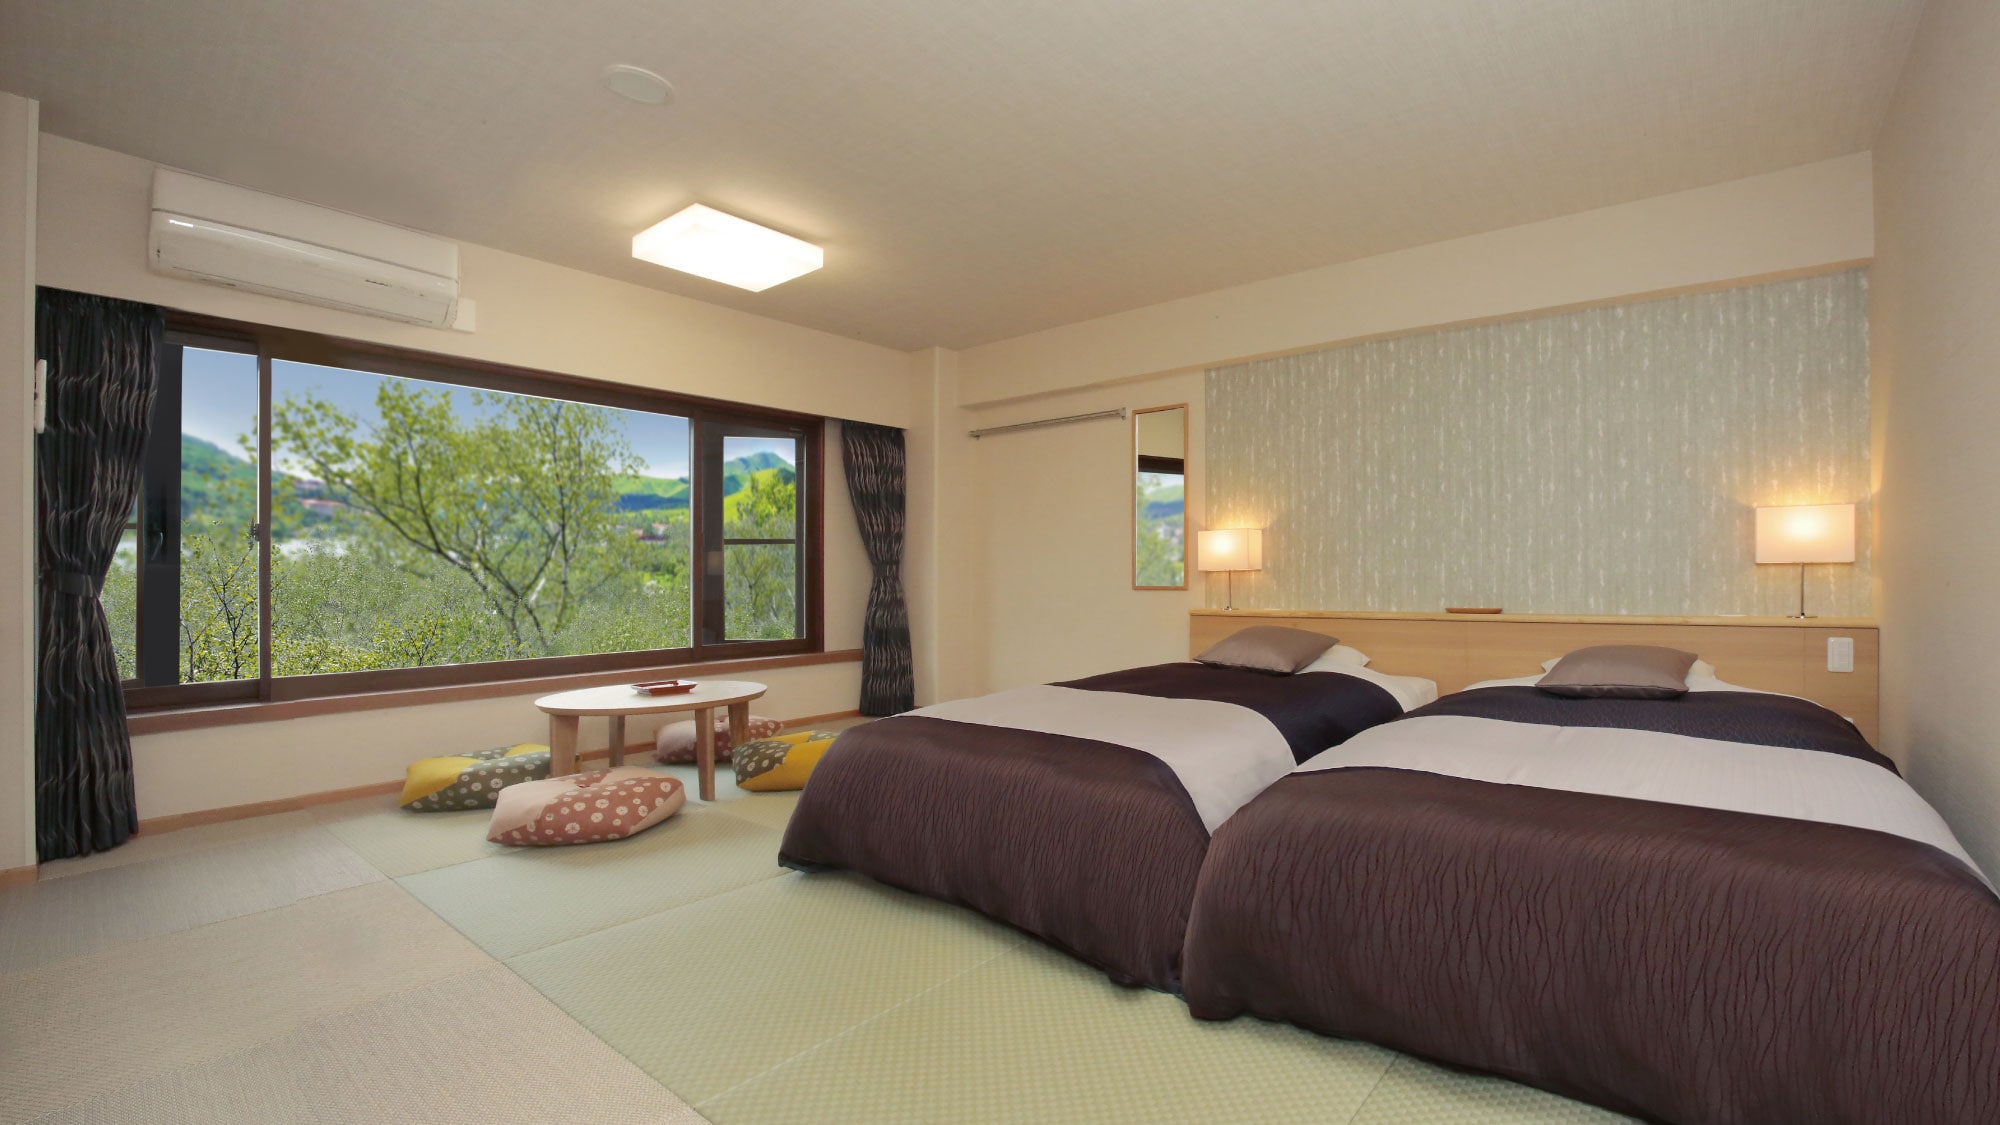 อาคารทิศตะวันออก ห้อง Japanese modern พักได้ 4 คน